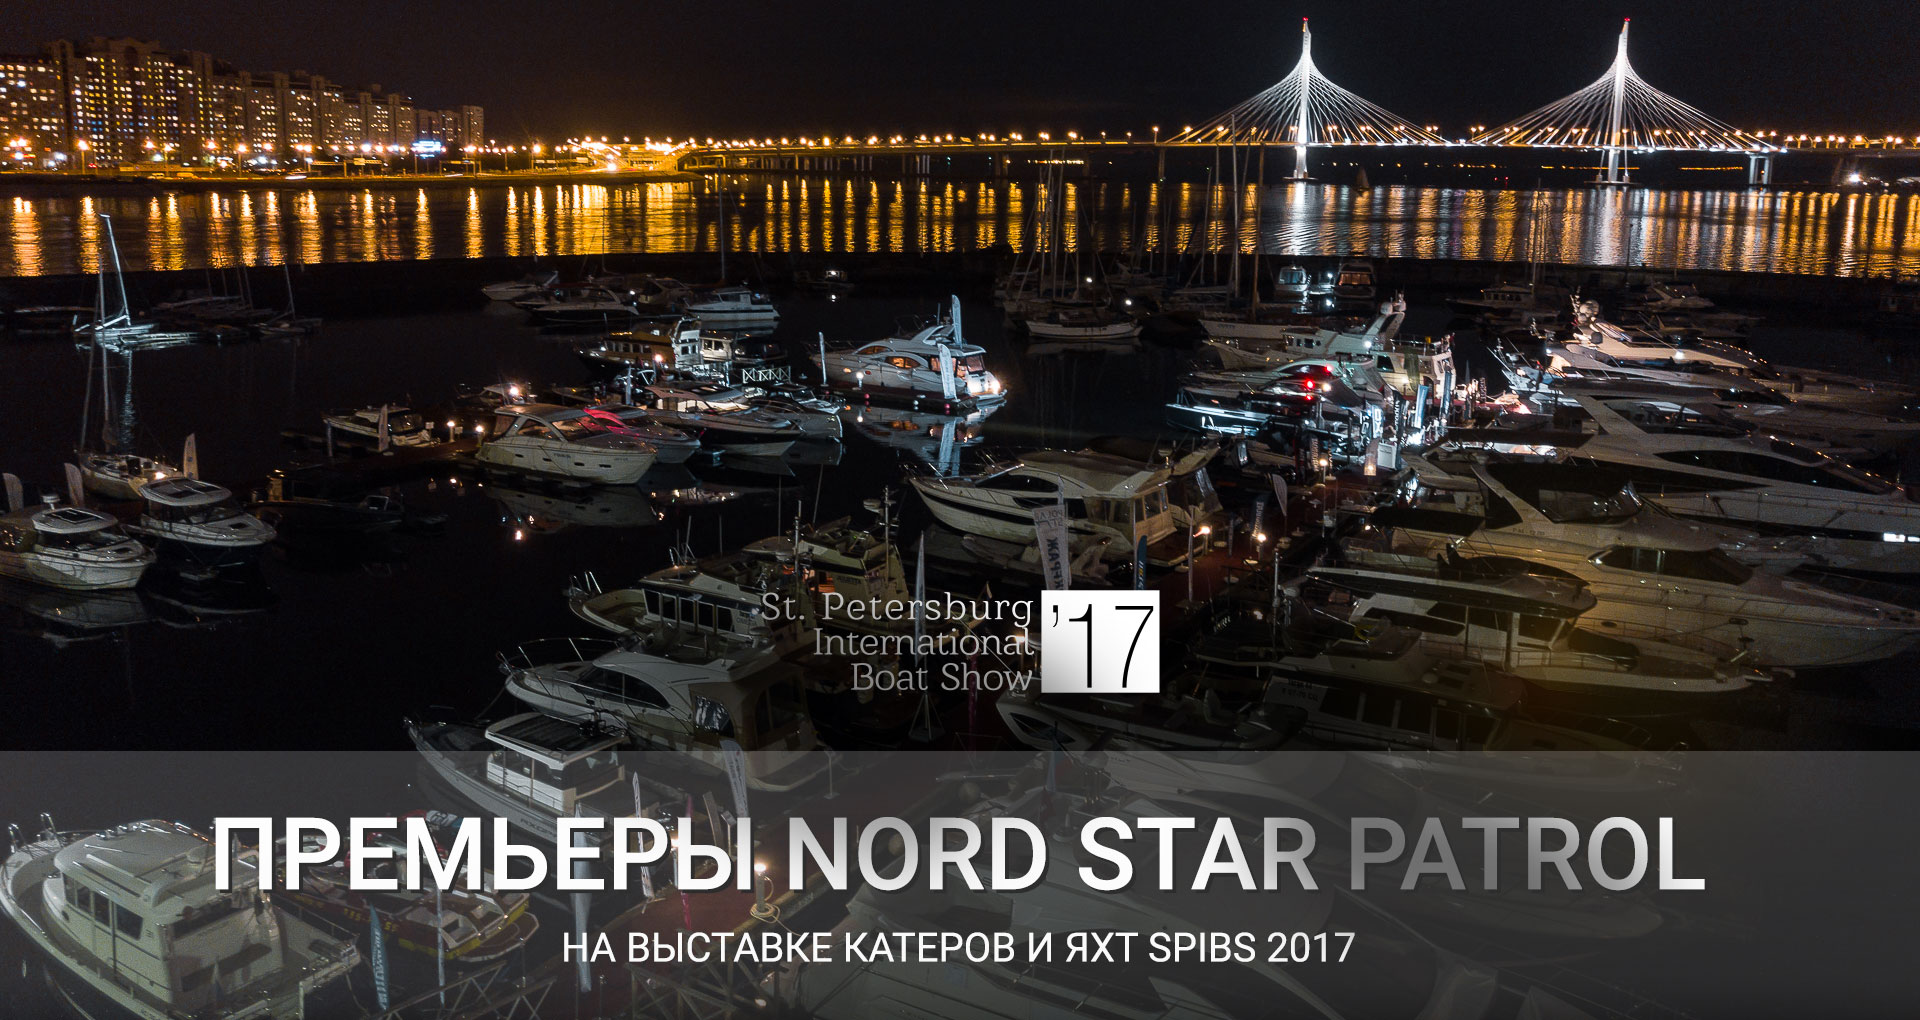 Премьеры Nord Star Patrol на выставке катеров и яхт SPIBS 2017